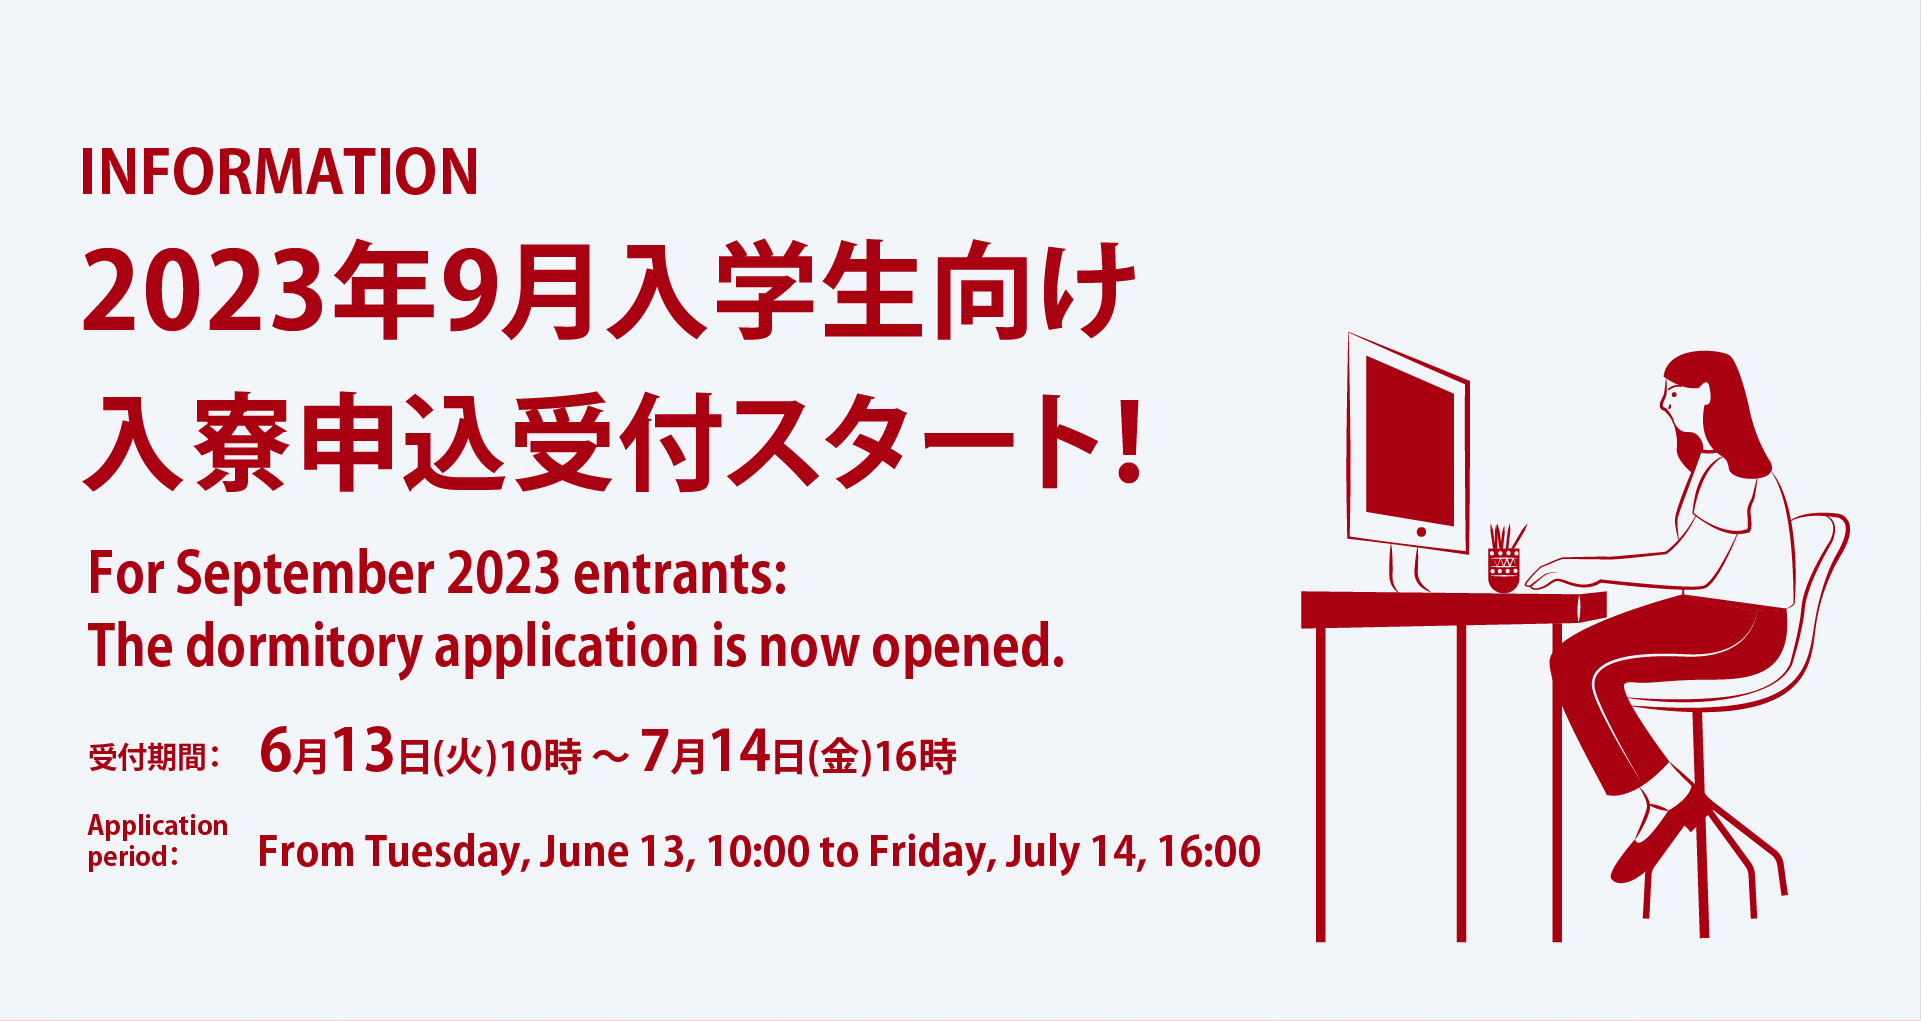 2023年9月入学予定者の皆様へ：入寮申込みのスケジュールが決定しました。日本時間の6月13日（火）10:00から7月14日（金）16:00まで、申込みを受け付けます。